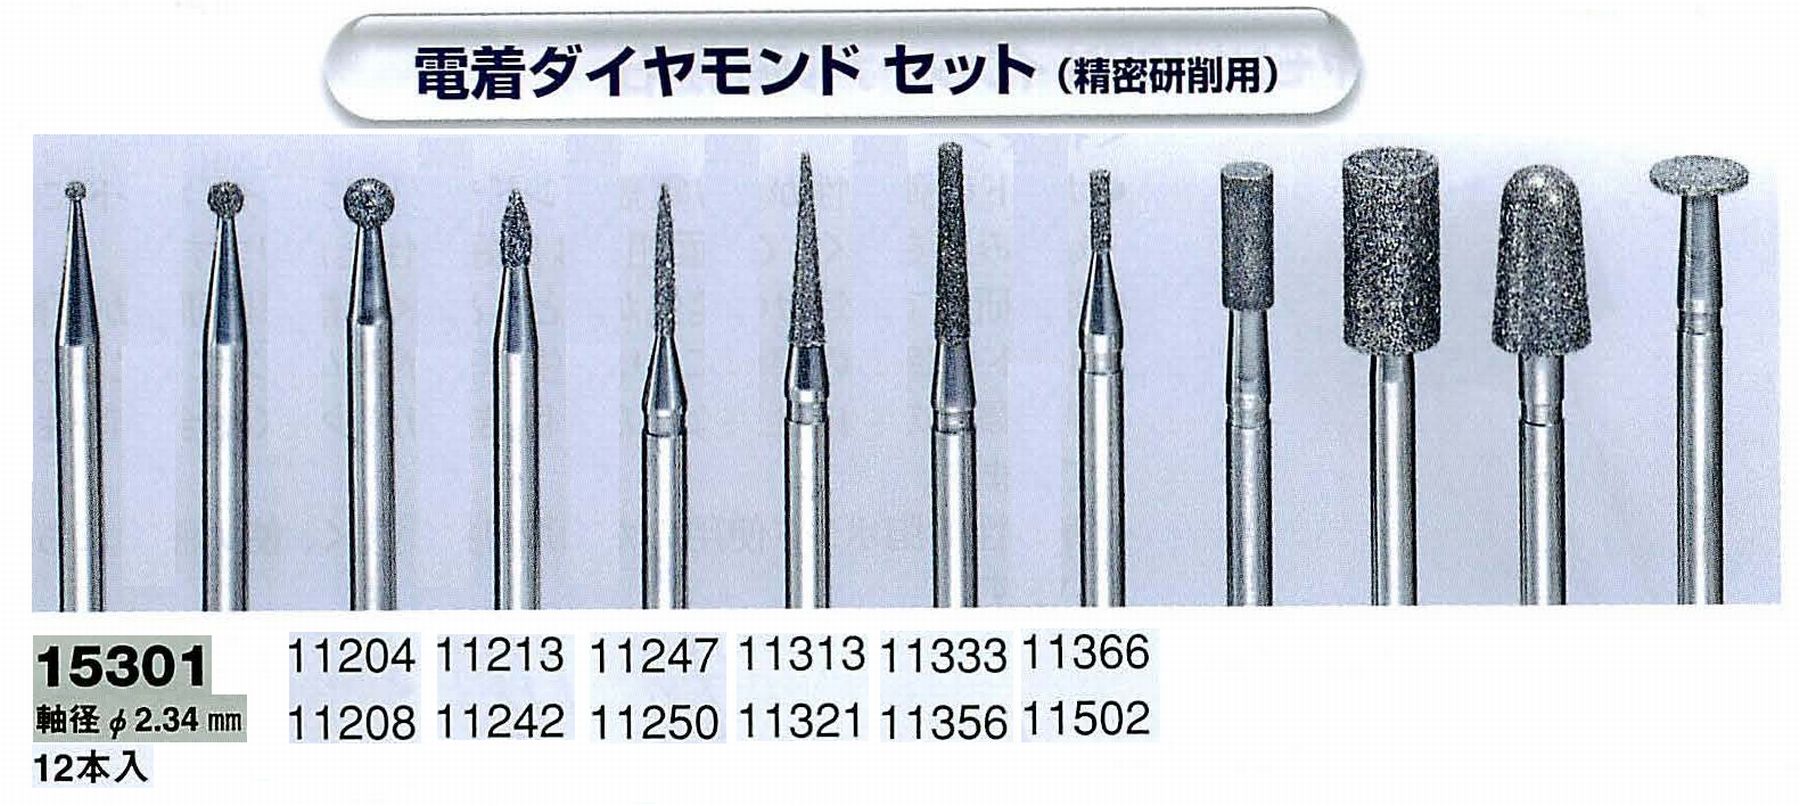 ナカニシ/NAKANISHI 電着ダイヤモンドアソートセット(精密研削用)軸径(シャンク)φ2.34mm 15301